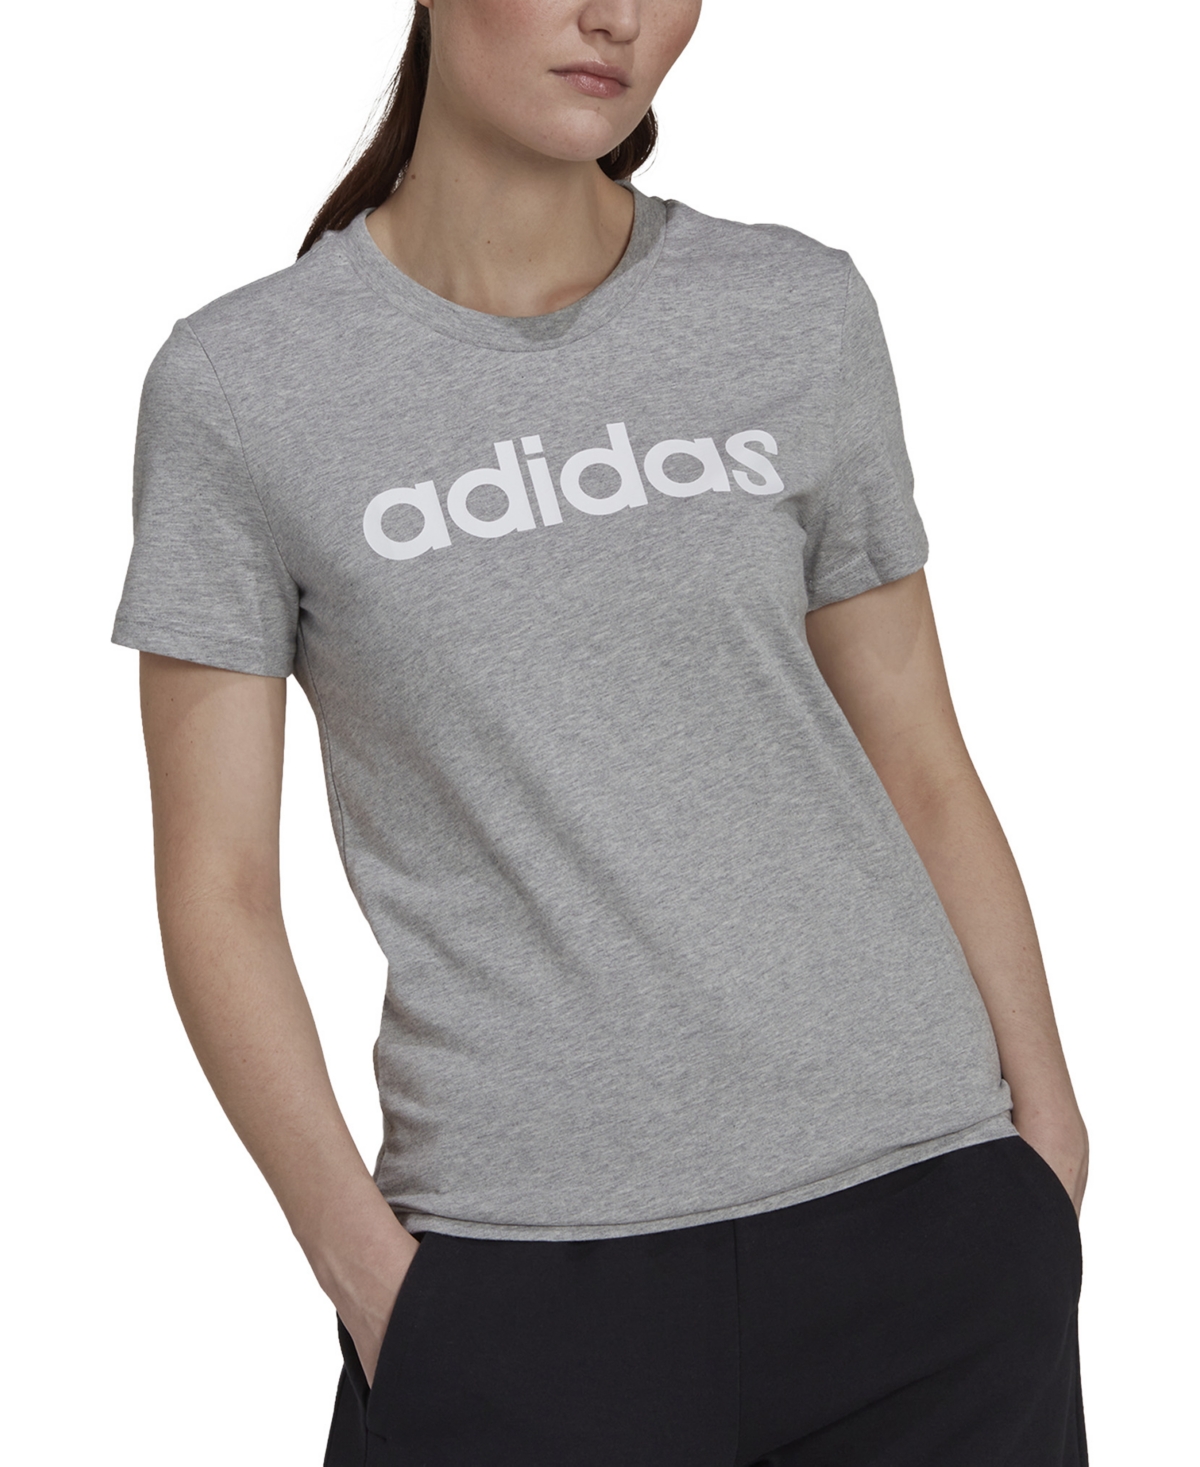 Adidas Originals Women's Essentials Cotton Linear Logo T-shirt In Medium Grey Heather,white